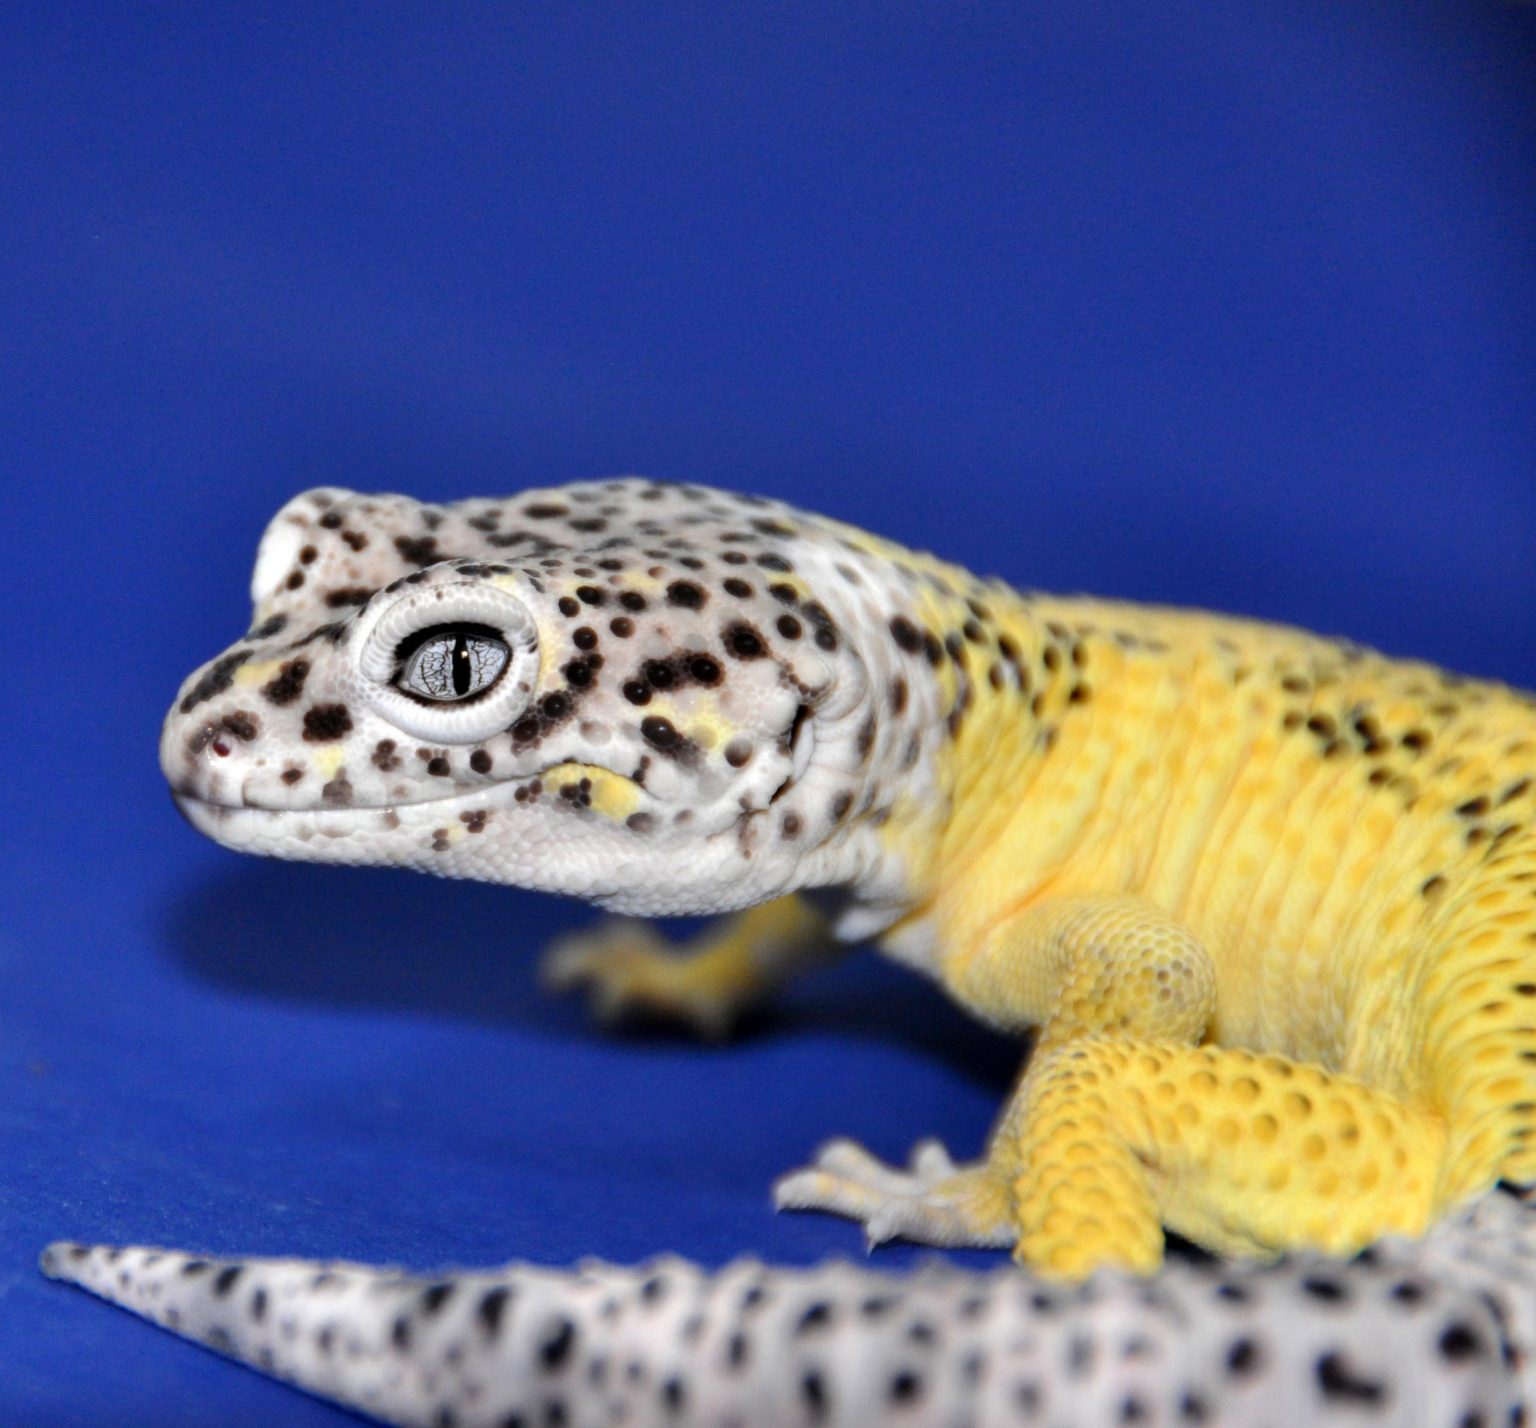 Lemon Frost Leopard Gecko.